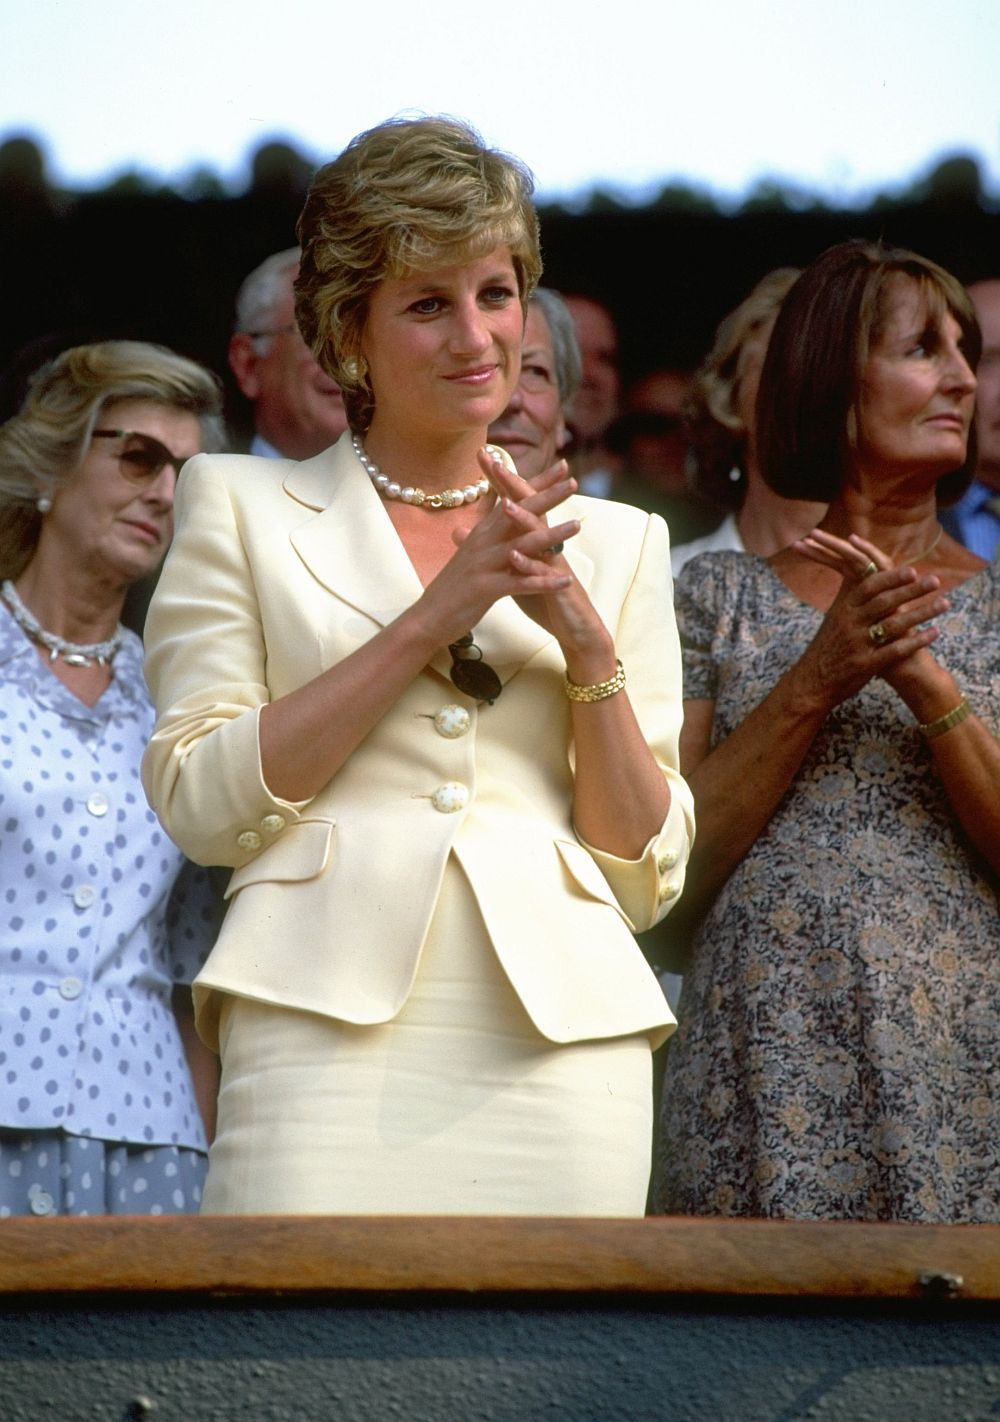 Наричана „Срамежливата Ди” преди брака си с принц Чарлз, през 1981 г. русокосата красавица излезе от черупката си и осъзна, че дрехите могат да бъдат използвани като мощен инструмент за комуникация, казват за нея.